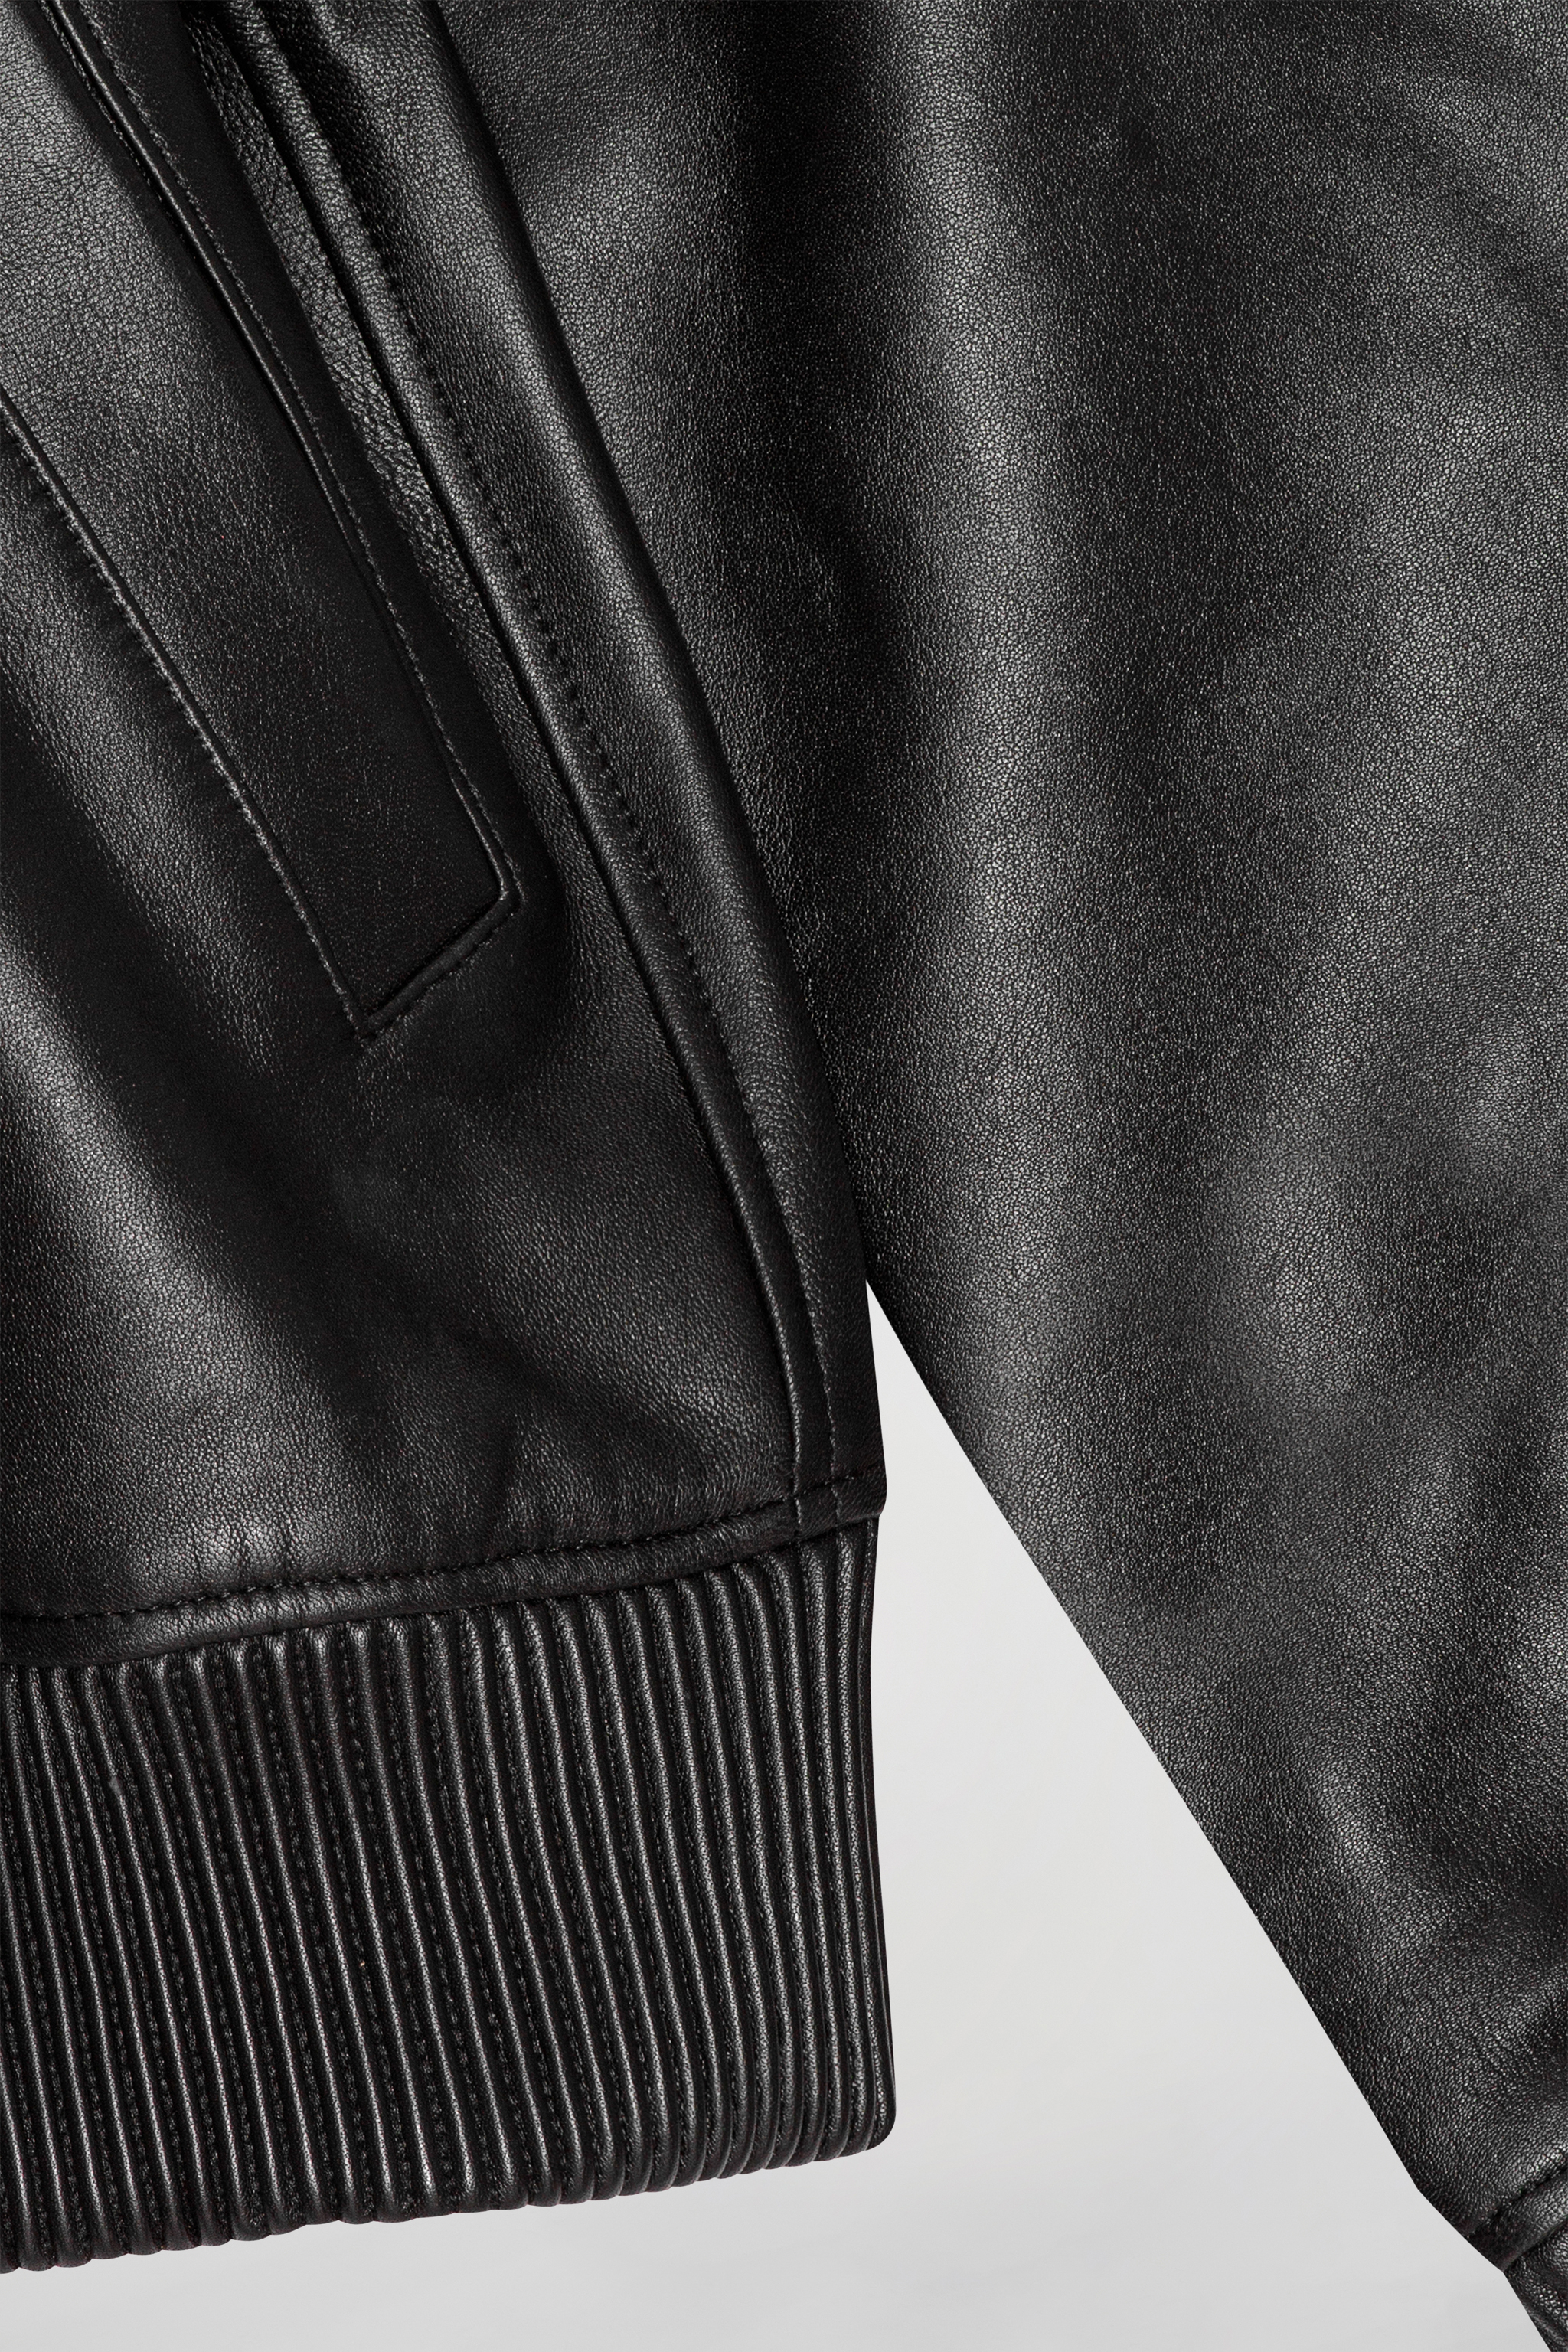 Buy Calvin Klein Men Black Long Sleeve Mix Media Varsity Leather Jacket -  NNNOW.com